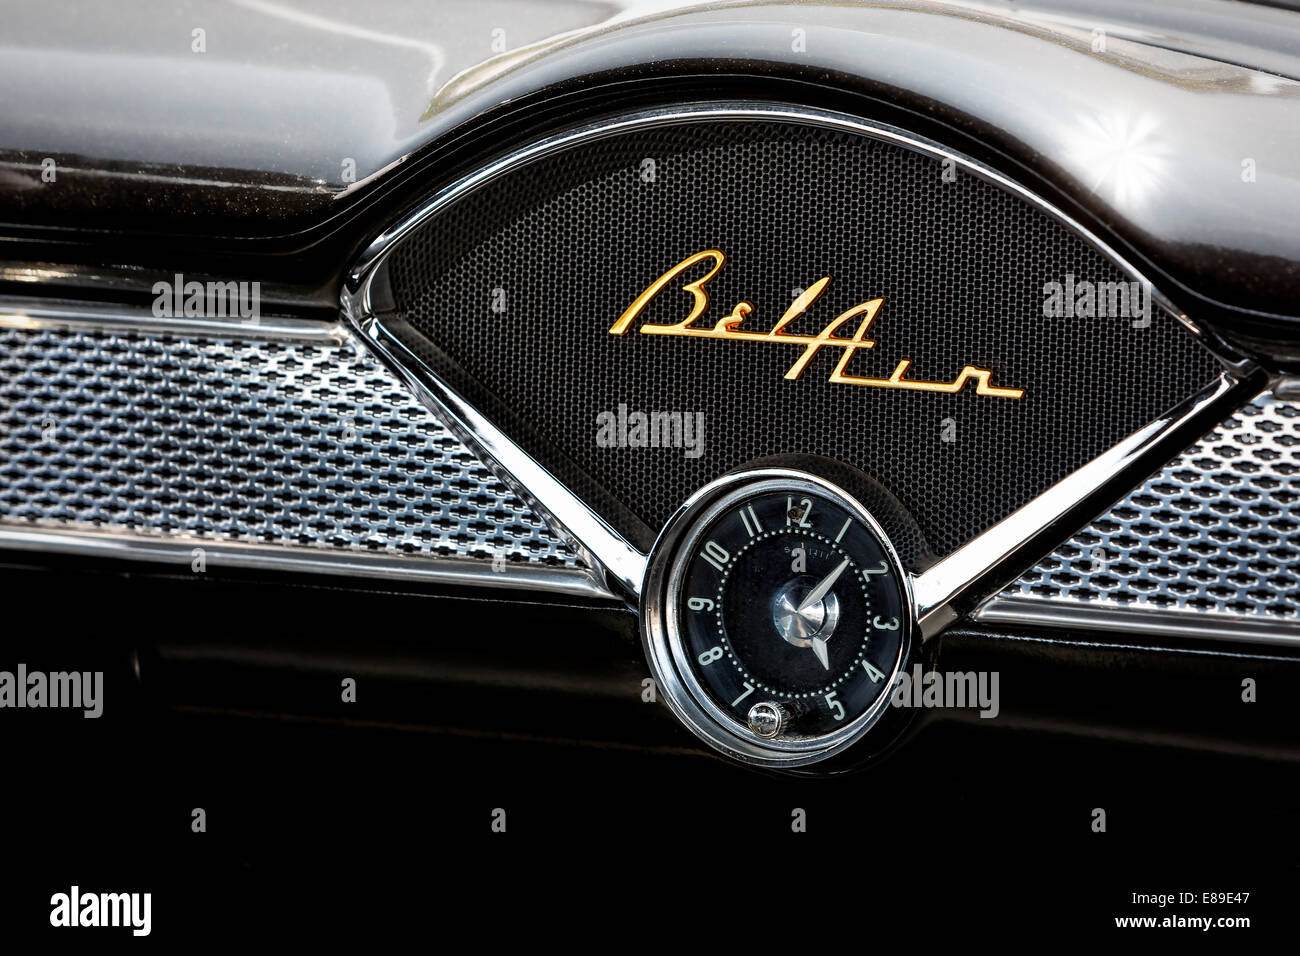 1955 Chevy BelAir - inneren Blick auf dieses Schwarz und Chrom Emblem BelAir, Uhr und Dashboard. Dieser Oldtimer ist in ausgezeichnetem Zustand trotz des Alters gehalten. Stockfoto